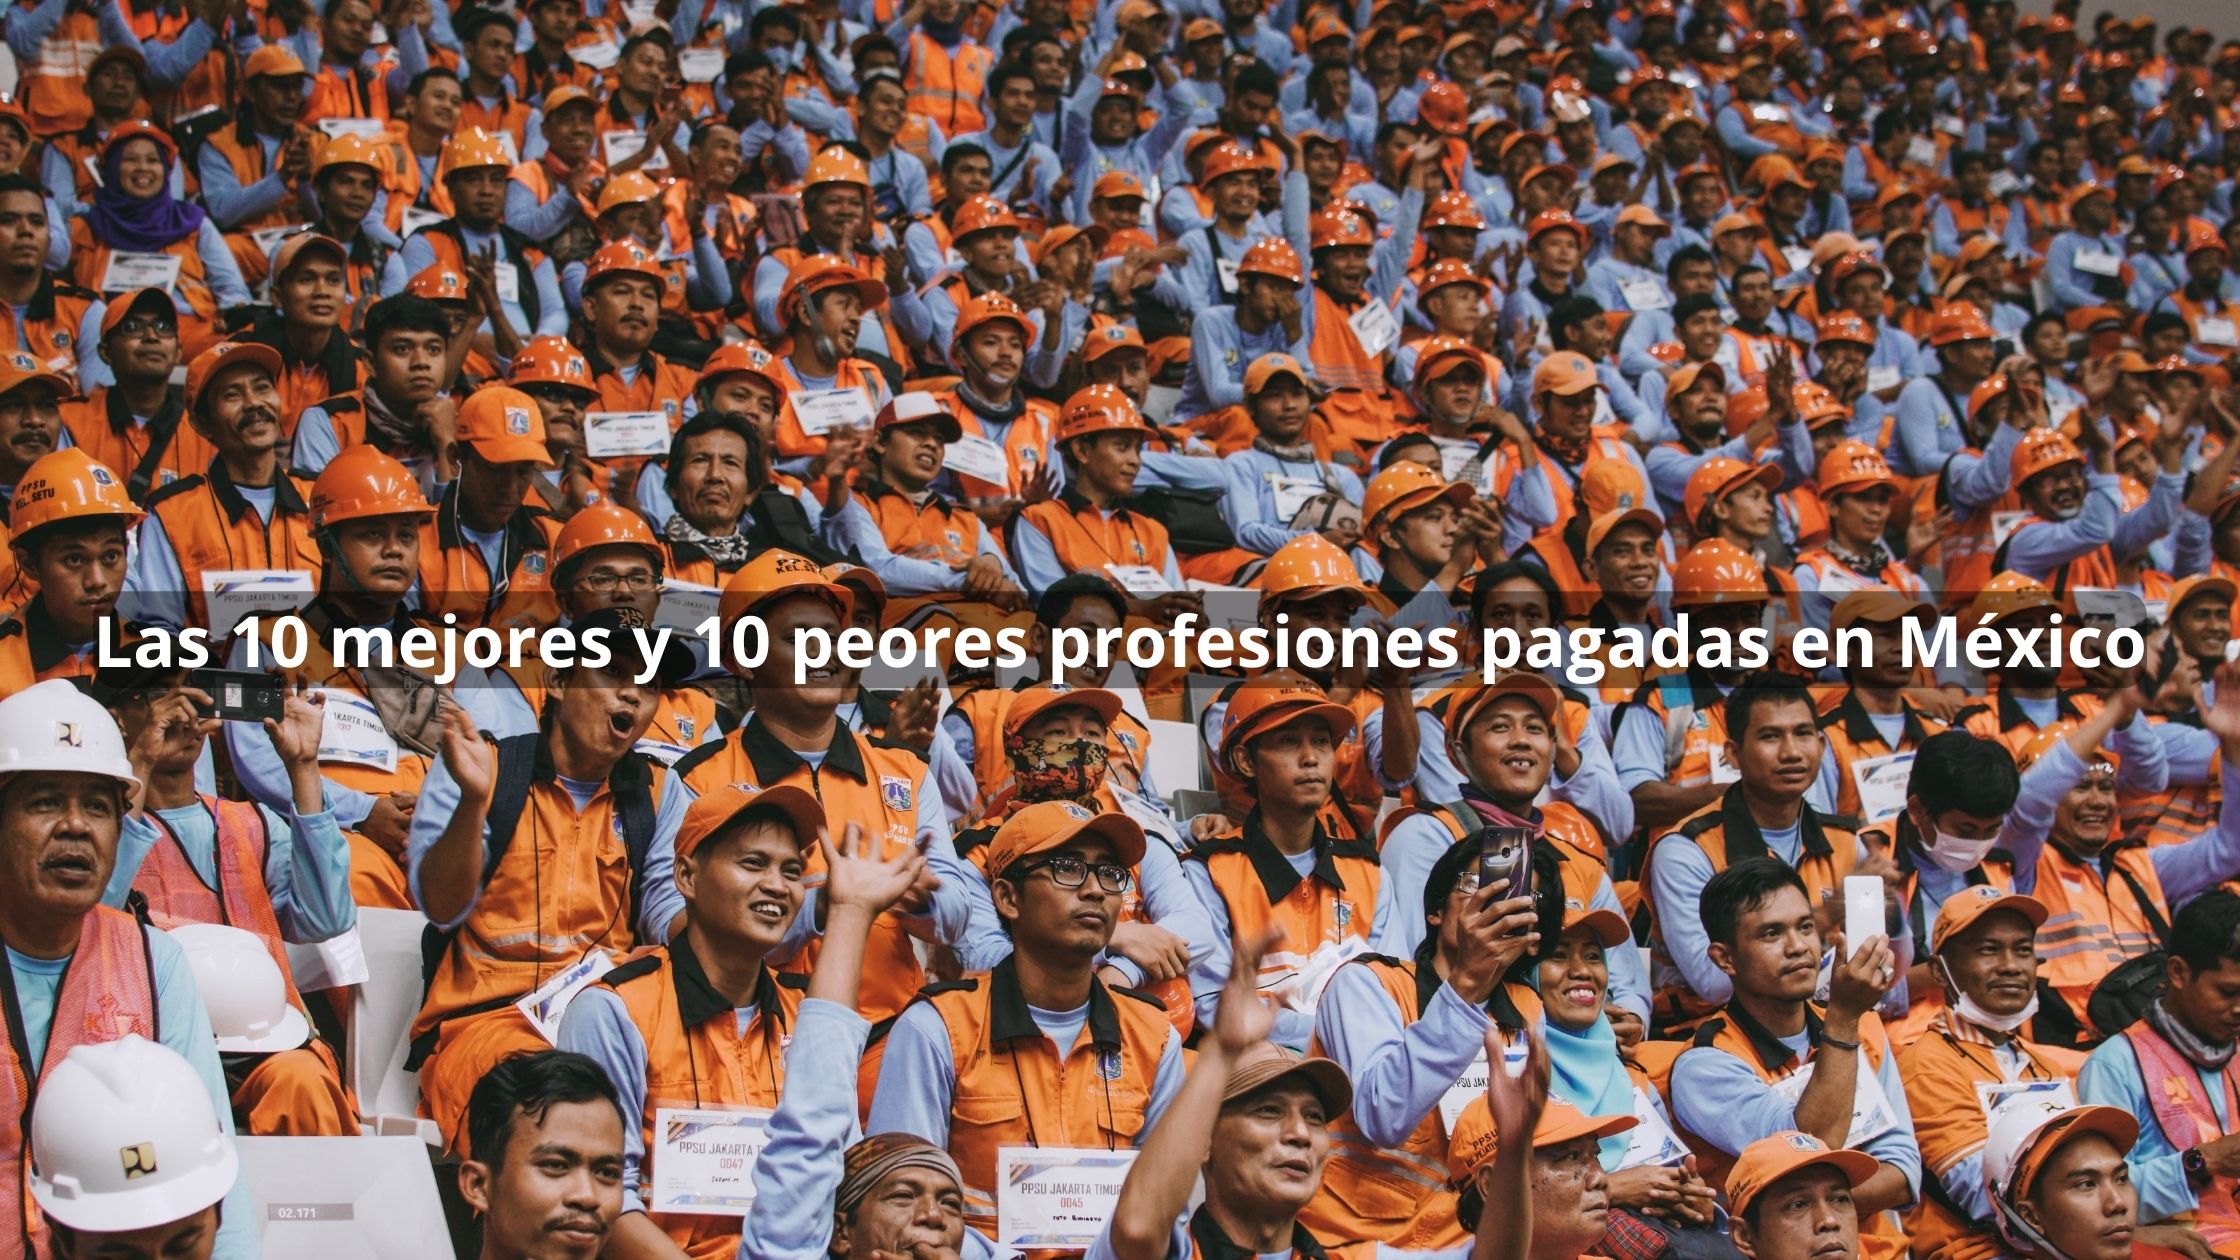 Las 10 mejores y 10 peores profesiones pagadas en Mexico